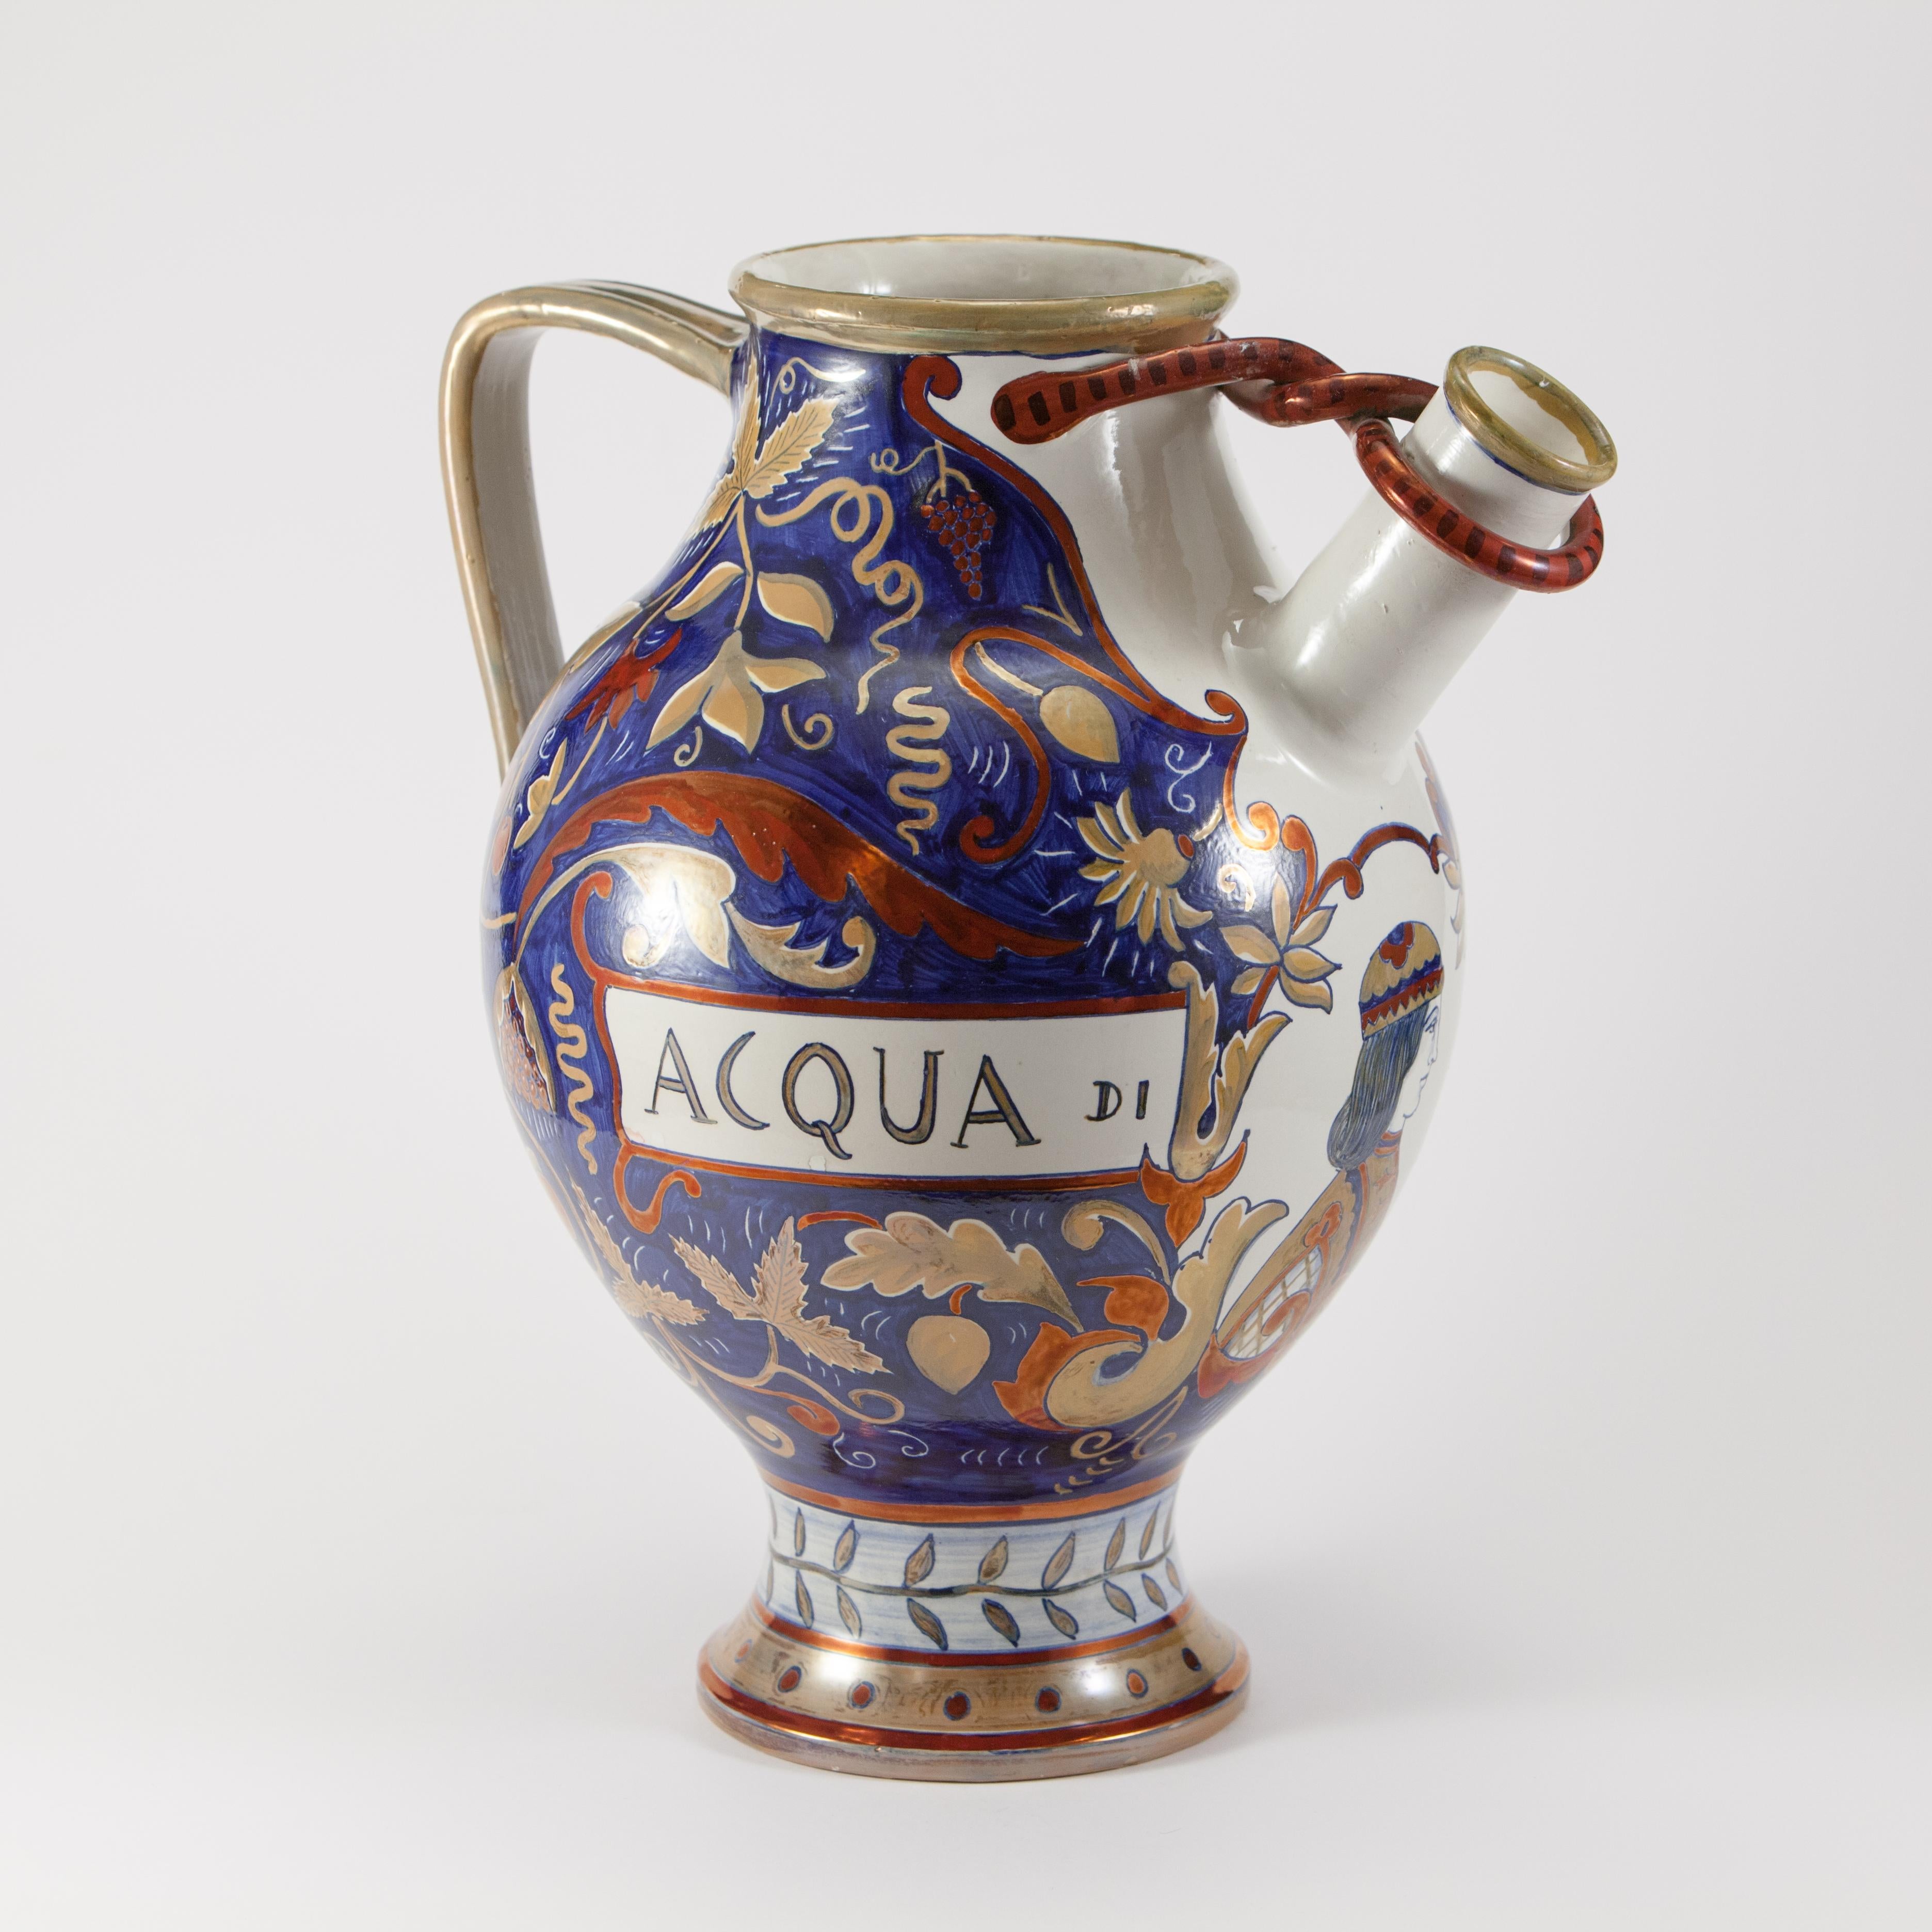 Majolika-Ausgießer mit Henkel, verziert mit Metallglanz im Stil der Renaissance-Majolika in Blau-, Gelb- und Rottönen.
Auf der Vorderseite der Vase befindet sich ein Medaillon mit einer Halbbüste und der Aufschrift 